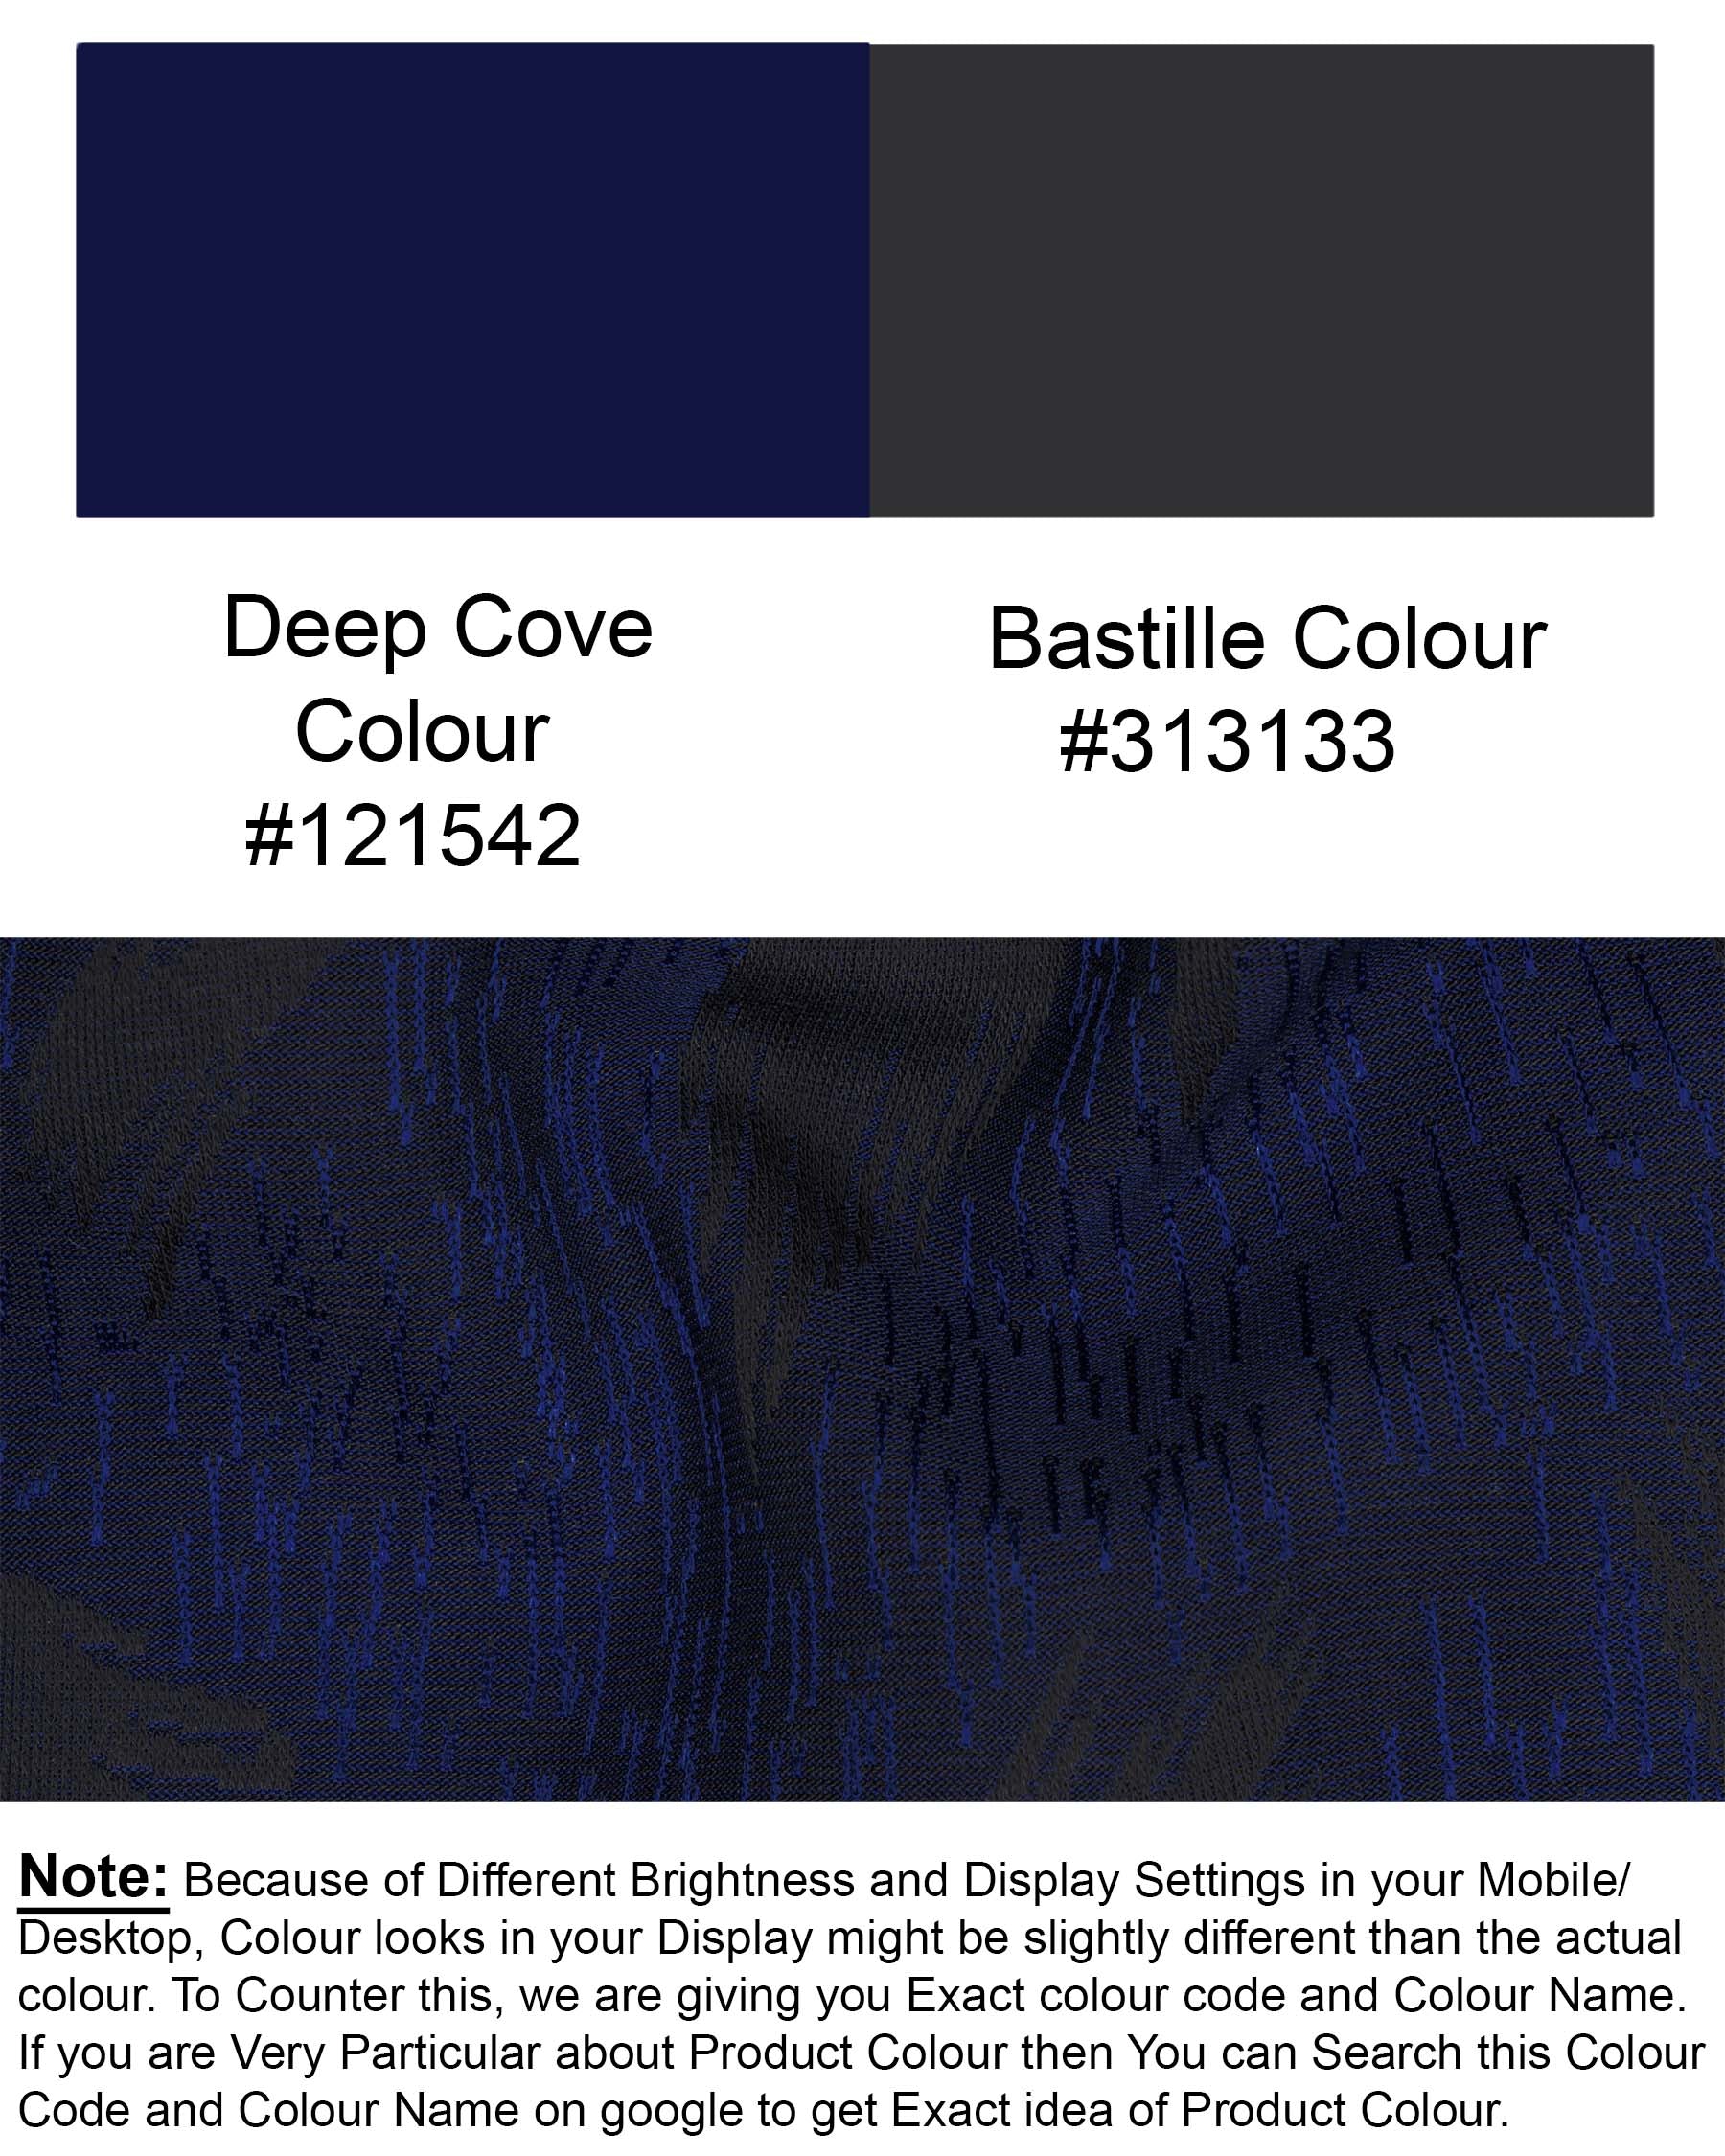 Deep Cove Blue Textured Cross Buttoned Bandhgala Blazer BL1795-CBG-36,BL1795-CBG-38,BL1795-CBG-40,BL1793-CBG2-42,BL1795-CBG-44,BL1795-CBG-46,BL1795-CBG-48,BL1795-CBG-50,BL1795-CBG-52,BL1795-CBG-54,BL1795-CBG-56,BL1795-CBG-58,BL1795-CBG-60